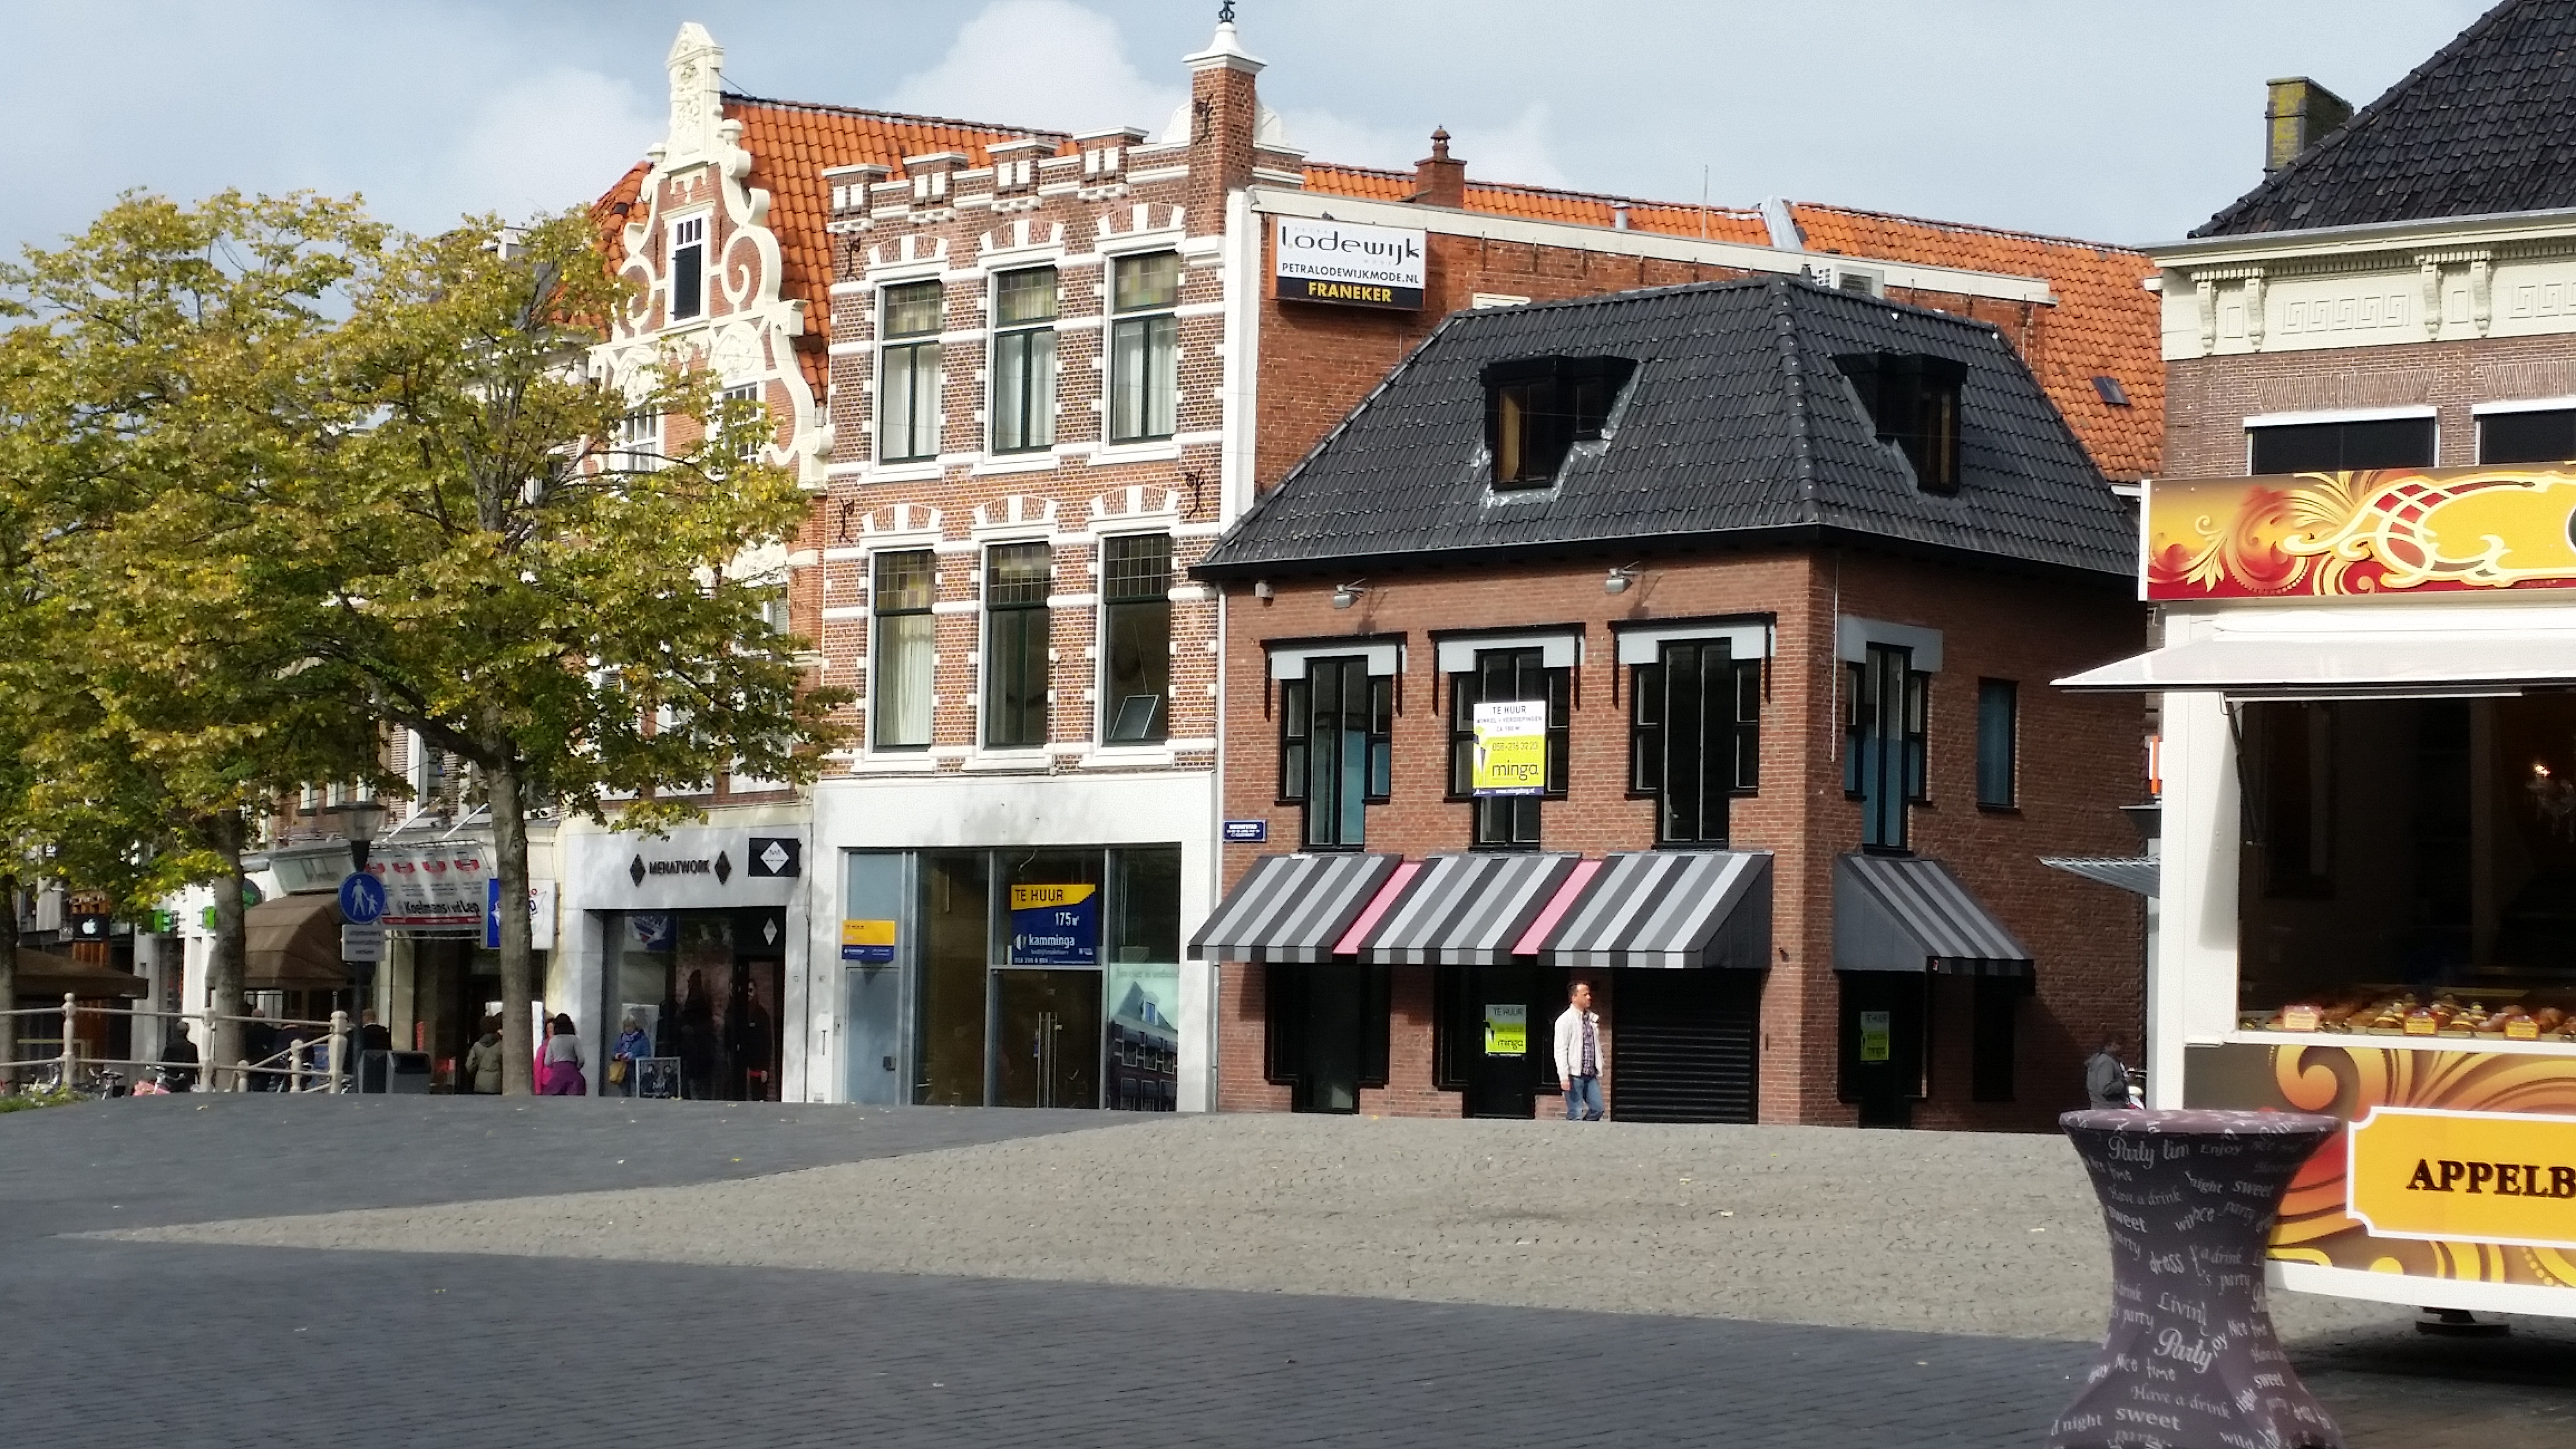 Te huur aangeboden: A1 lokatie in Leeuwarden (Nieuwestad 105). Bron: FranchiseFormules.NL